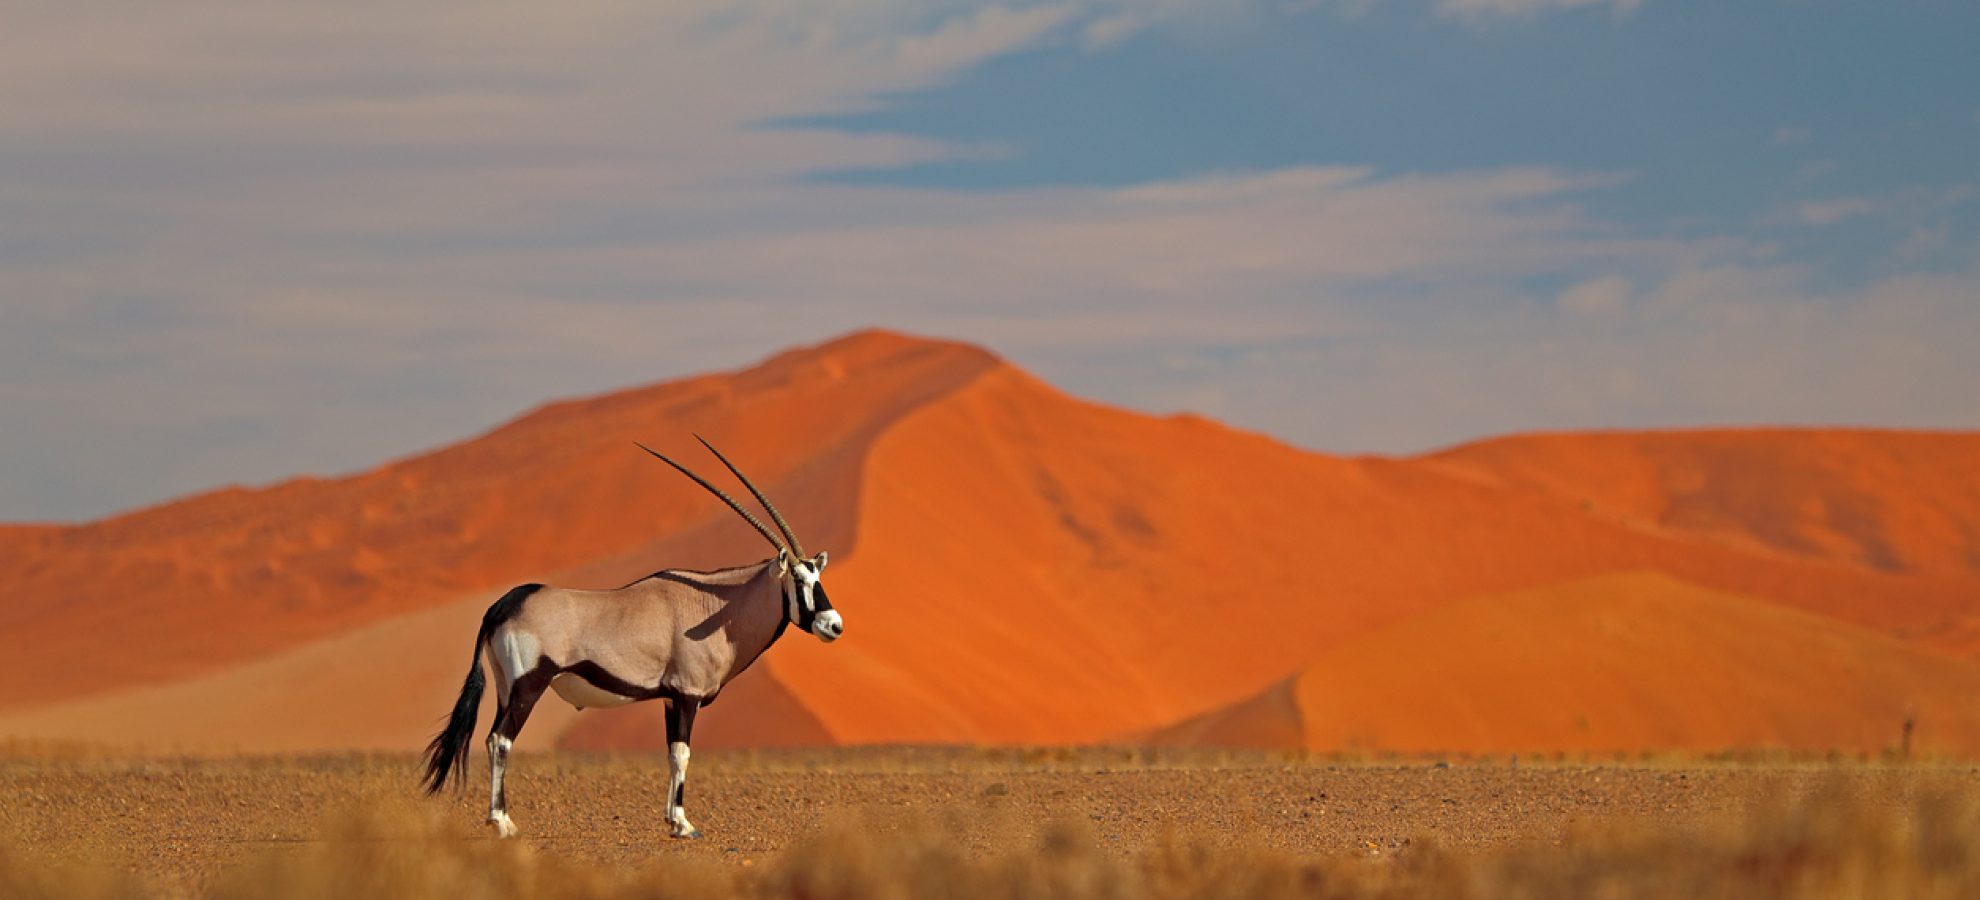 Wildlife habitat Namibia